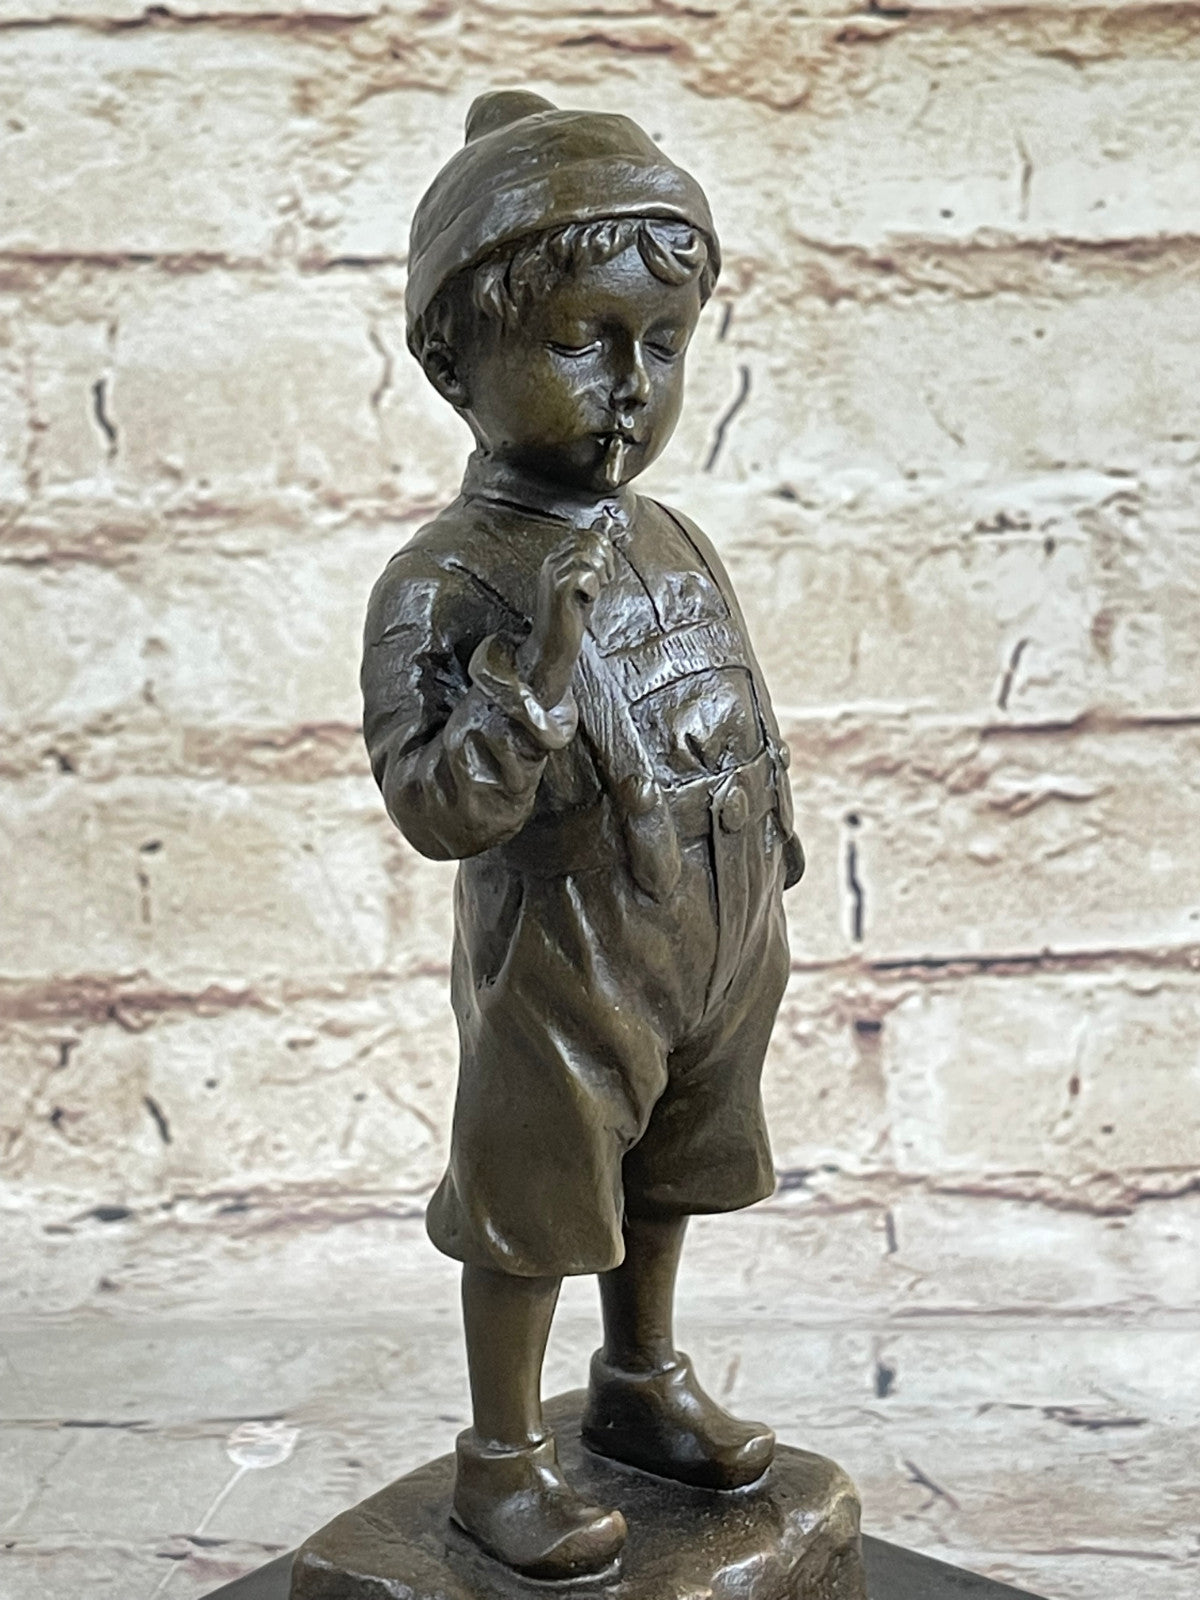 Hand Made Hot Cast Little Boy Smoking Humorous Bronze Sculpture Figurine